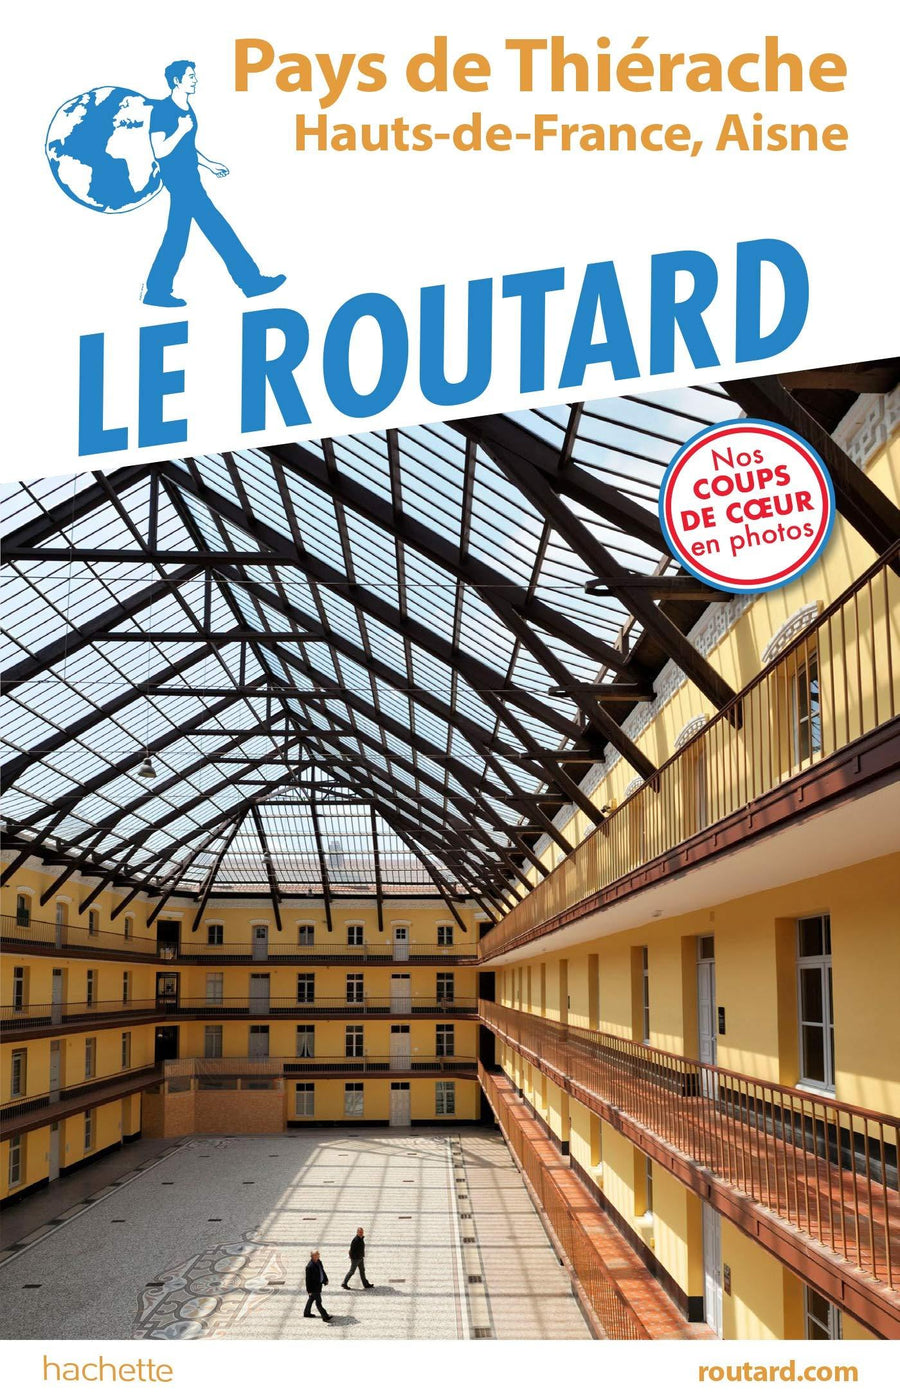 Guide du Routard - Pays de Thiérache | Hachette guide de voyage Hachette 